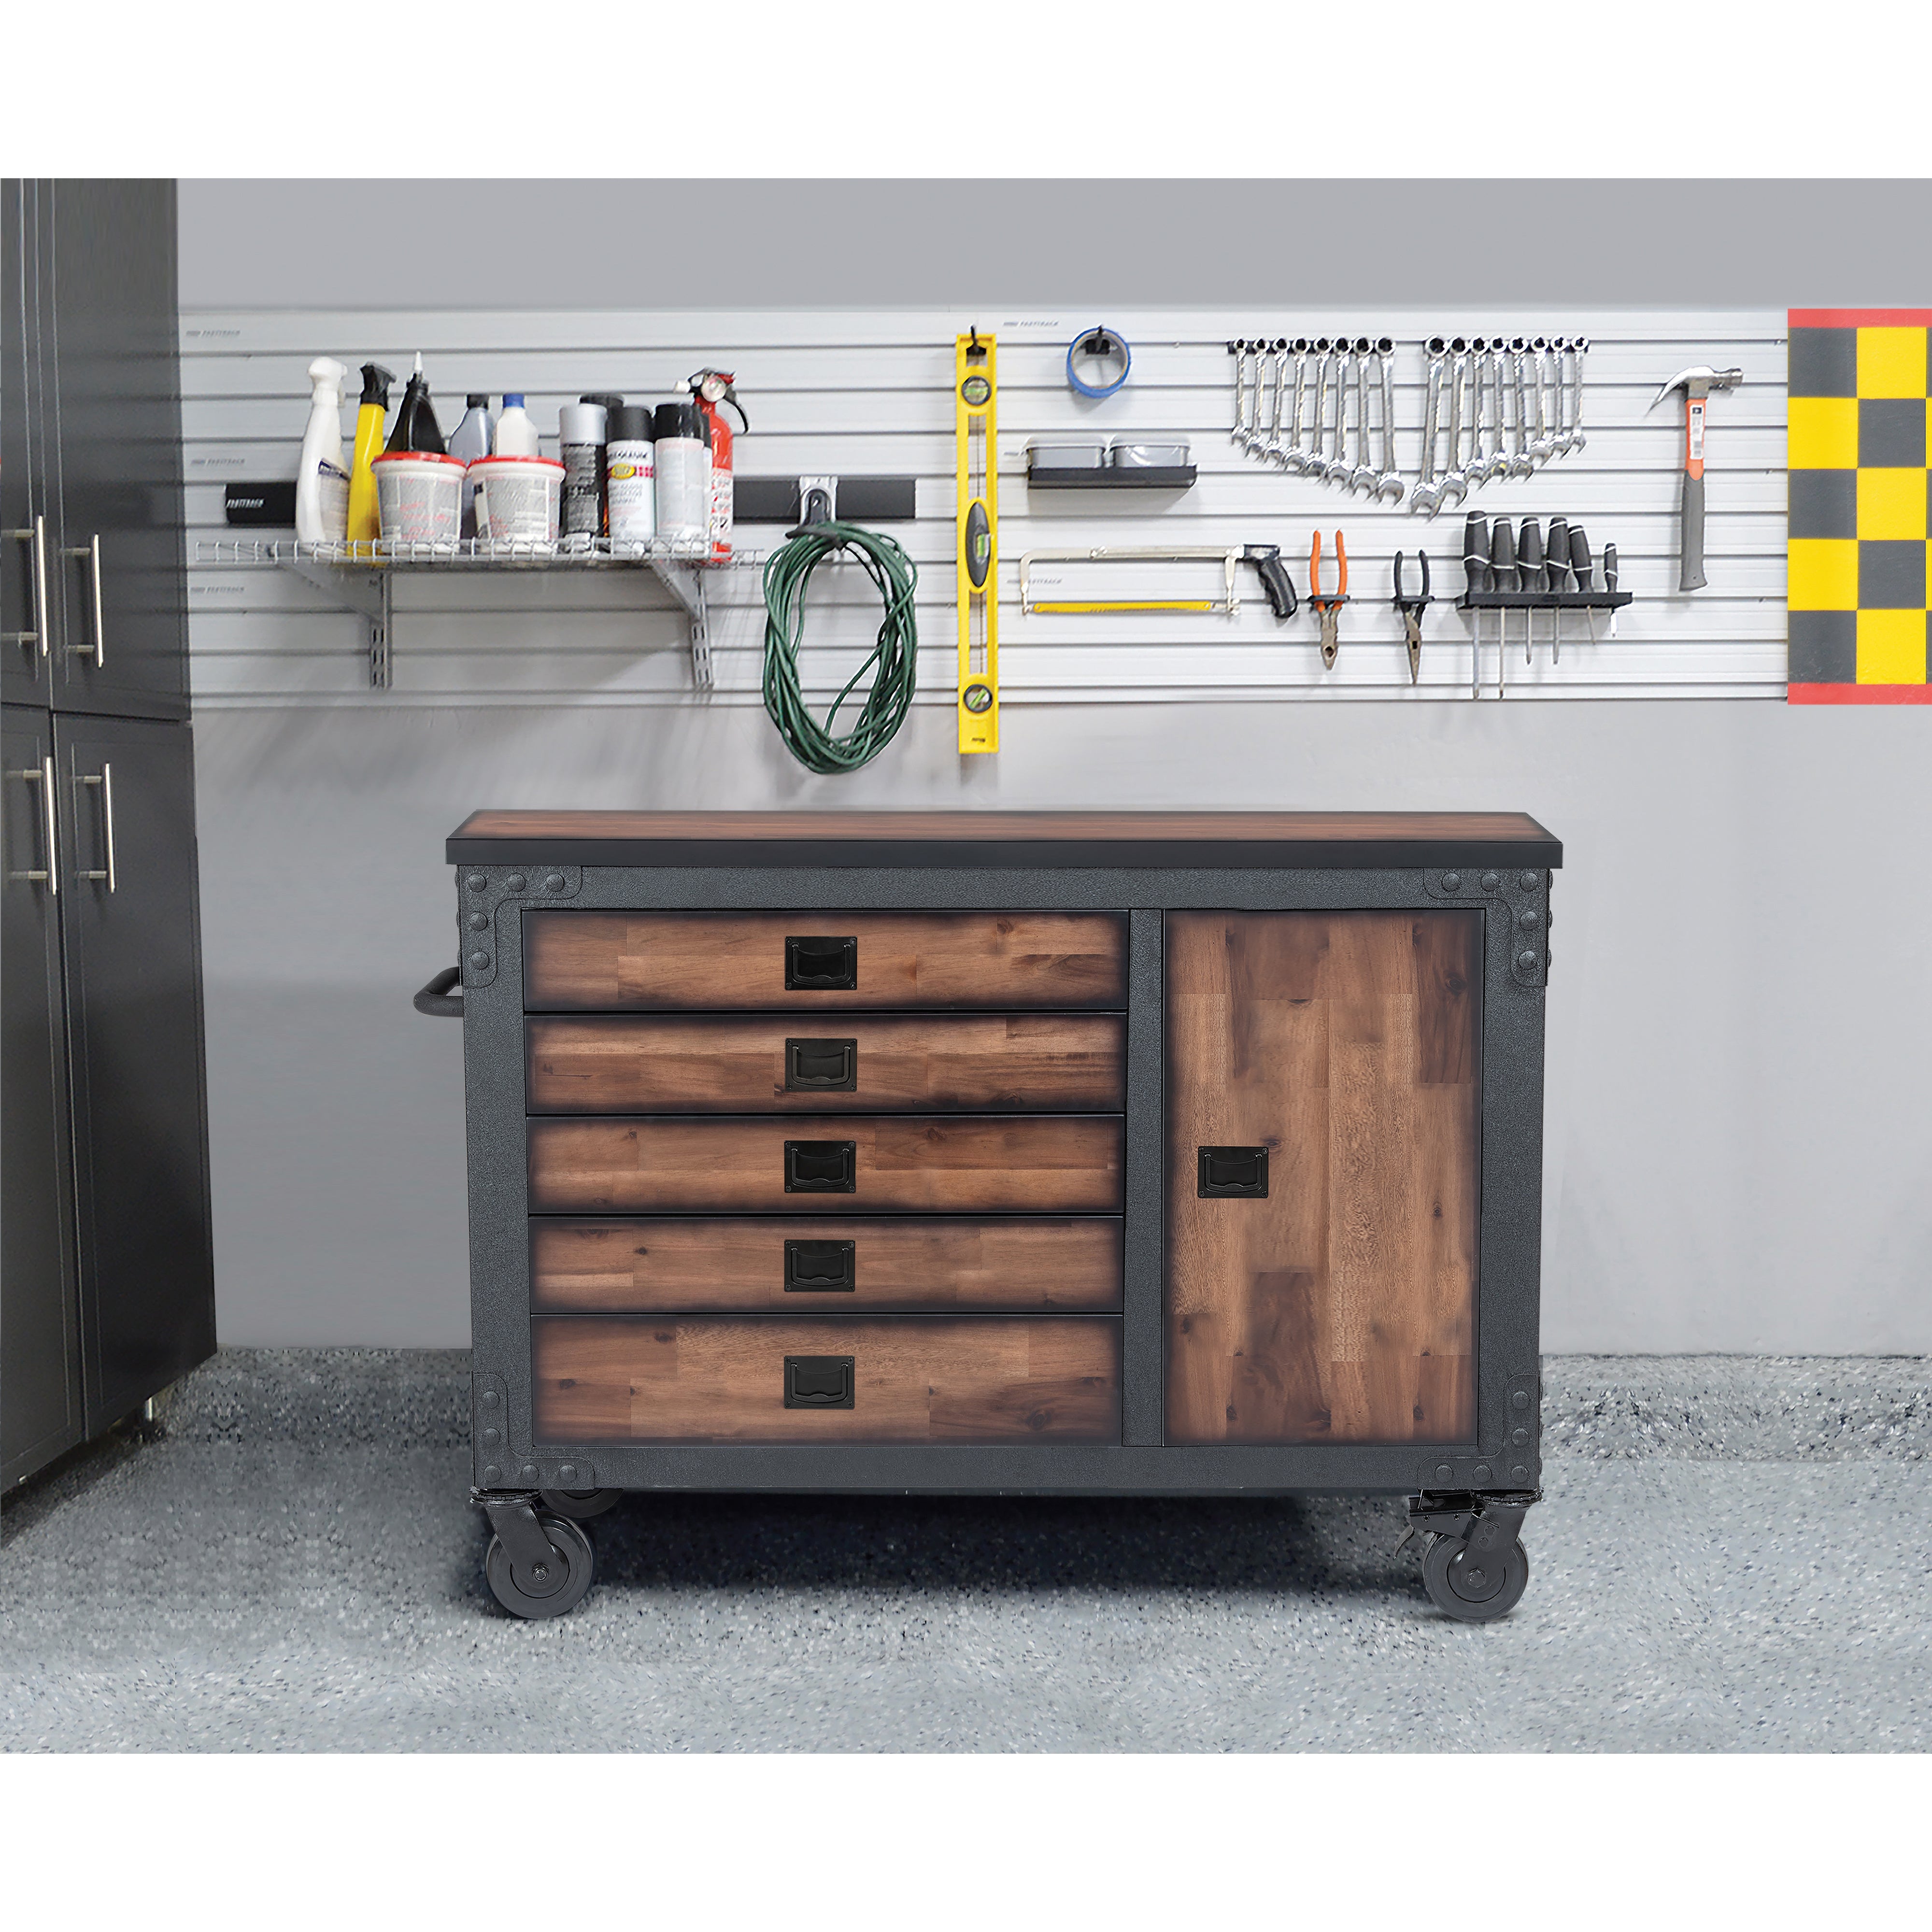 Duramax garage storage Duramax 5-Piece Garage Set with Workbench, Tool Chest and Wall Cabinets